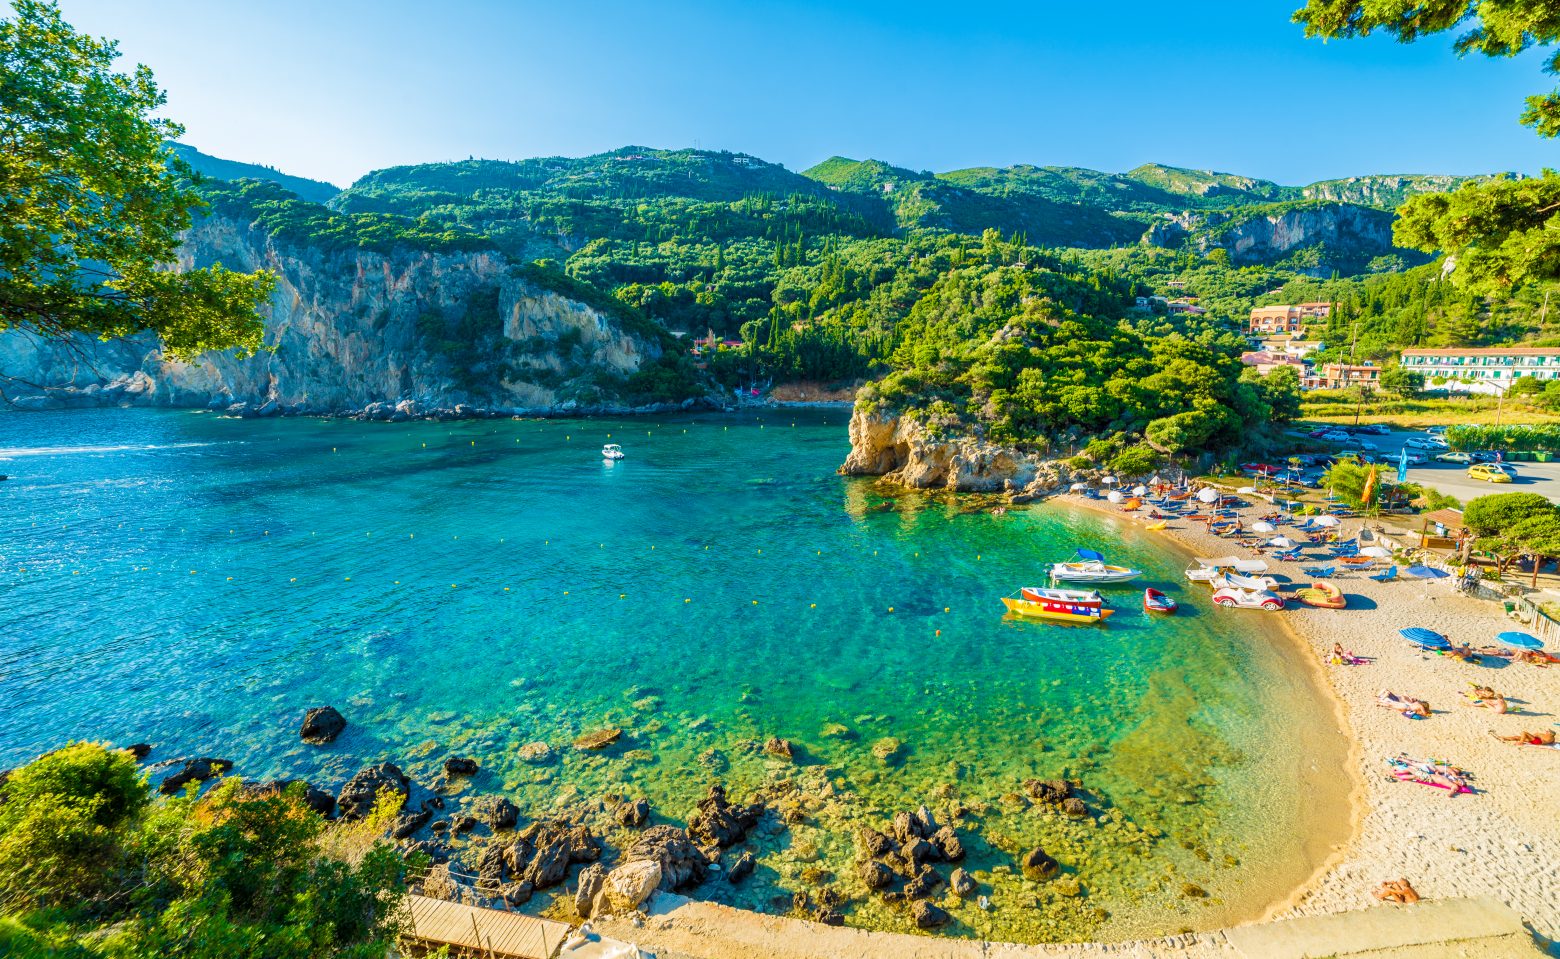 Αυτές είναι οι 10 καλύτερες χώρες της Ευρώπης για κολύμπι - Η θέση της Ελλάδας